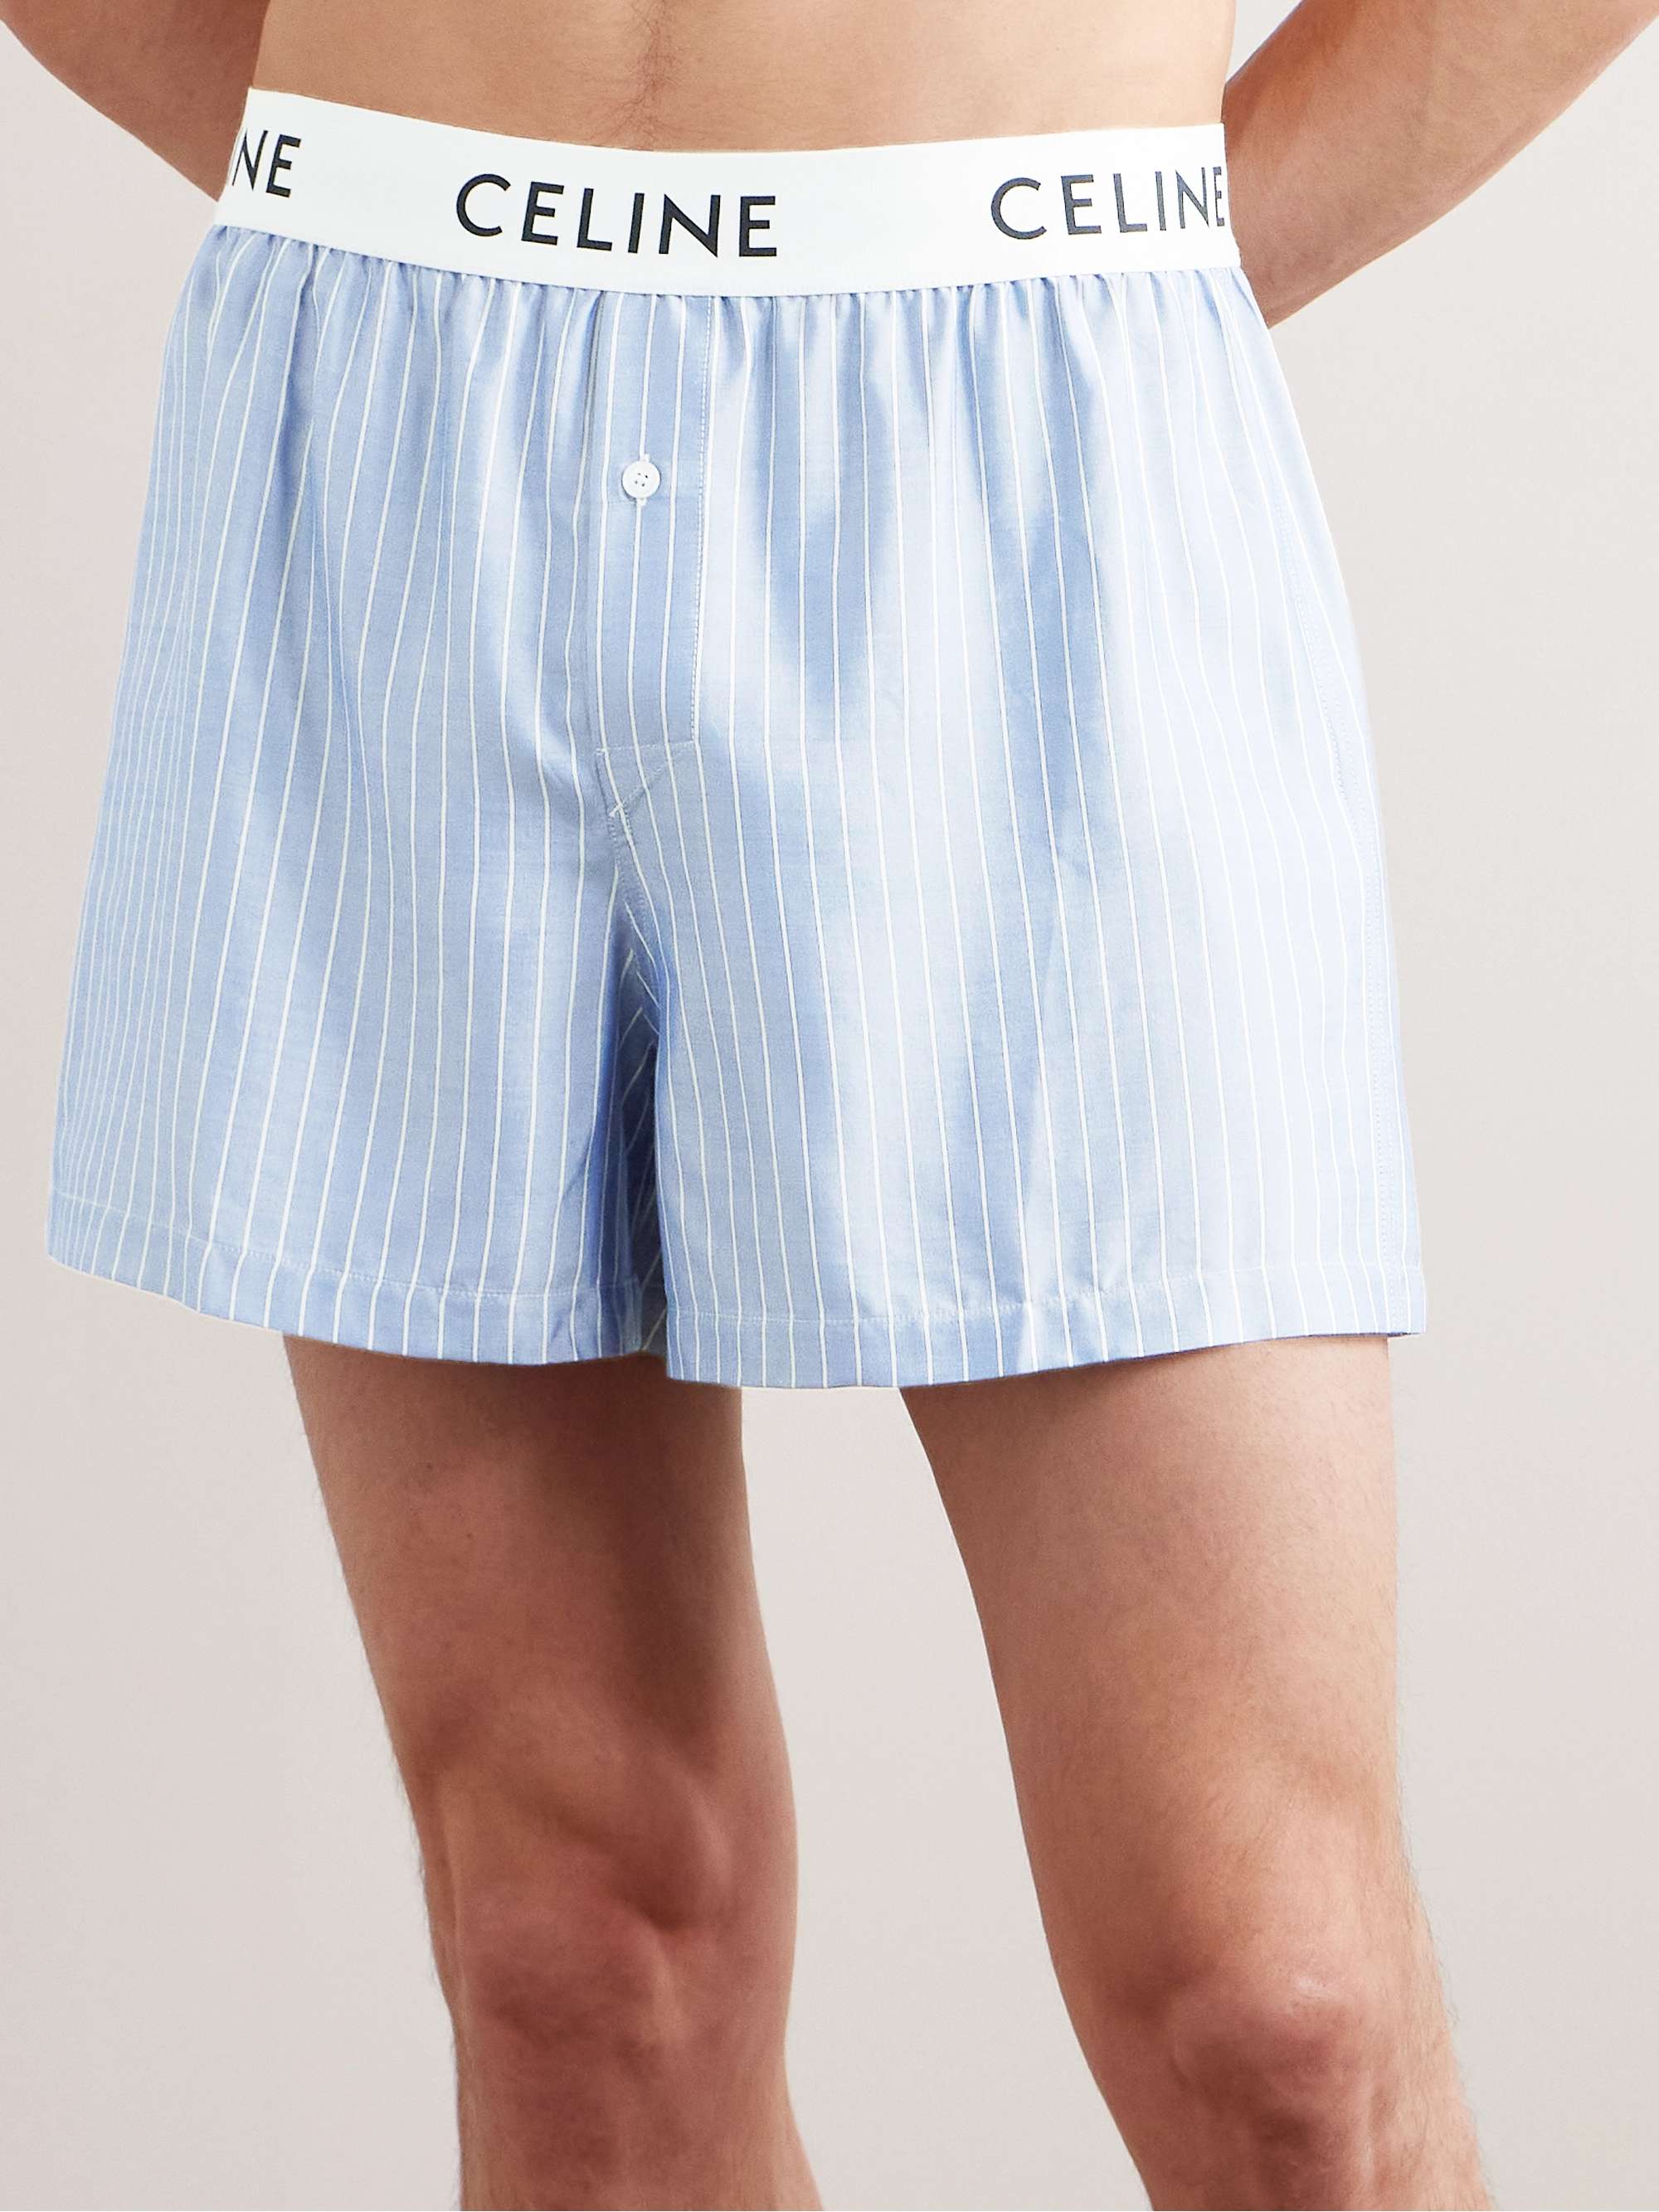 CELINE HOMME Straight-Leg Striped Silk Pyjama Shorts for Men